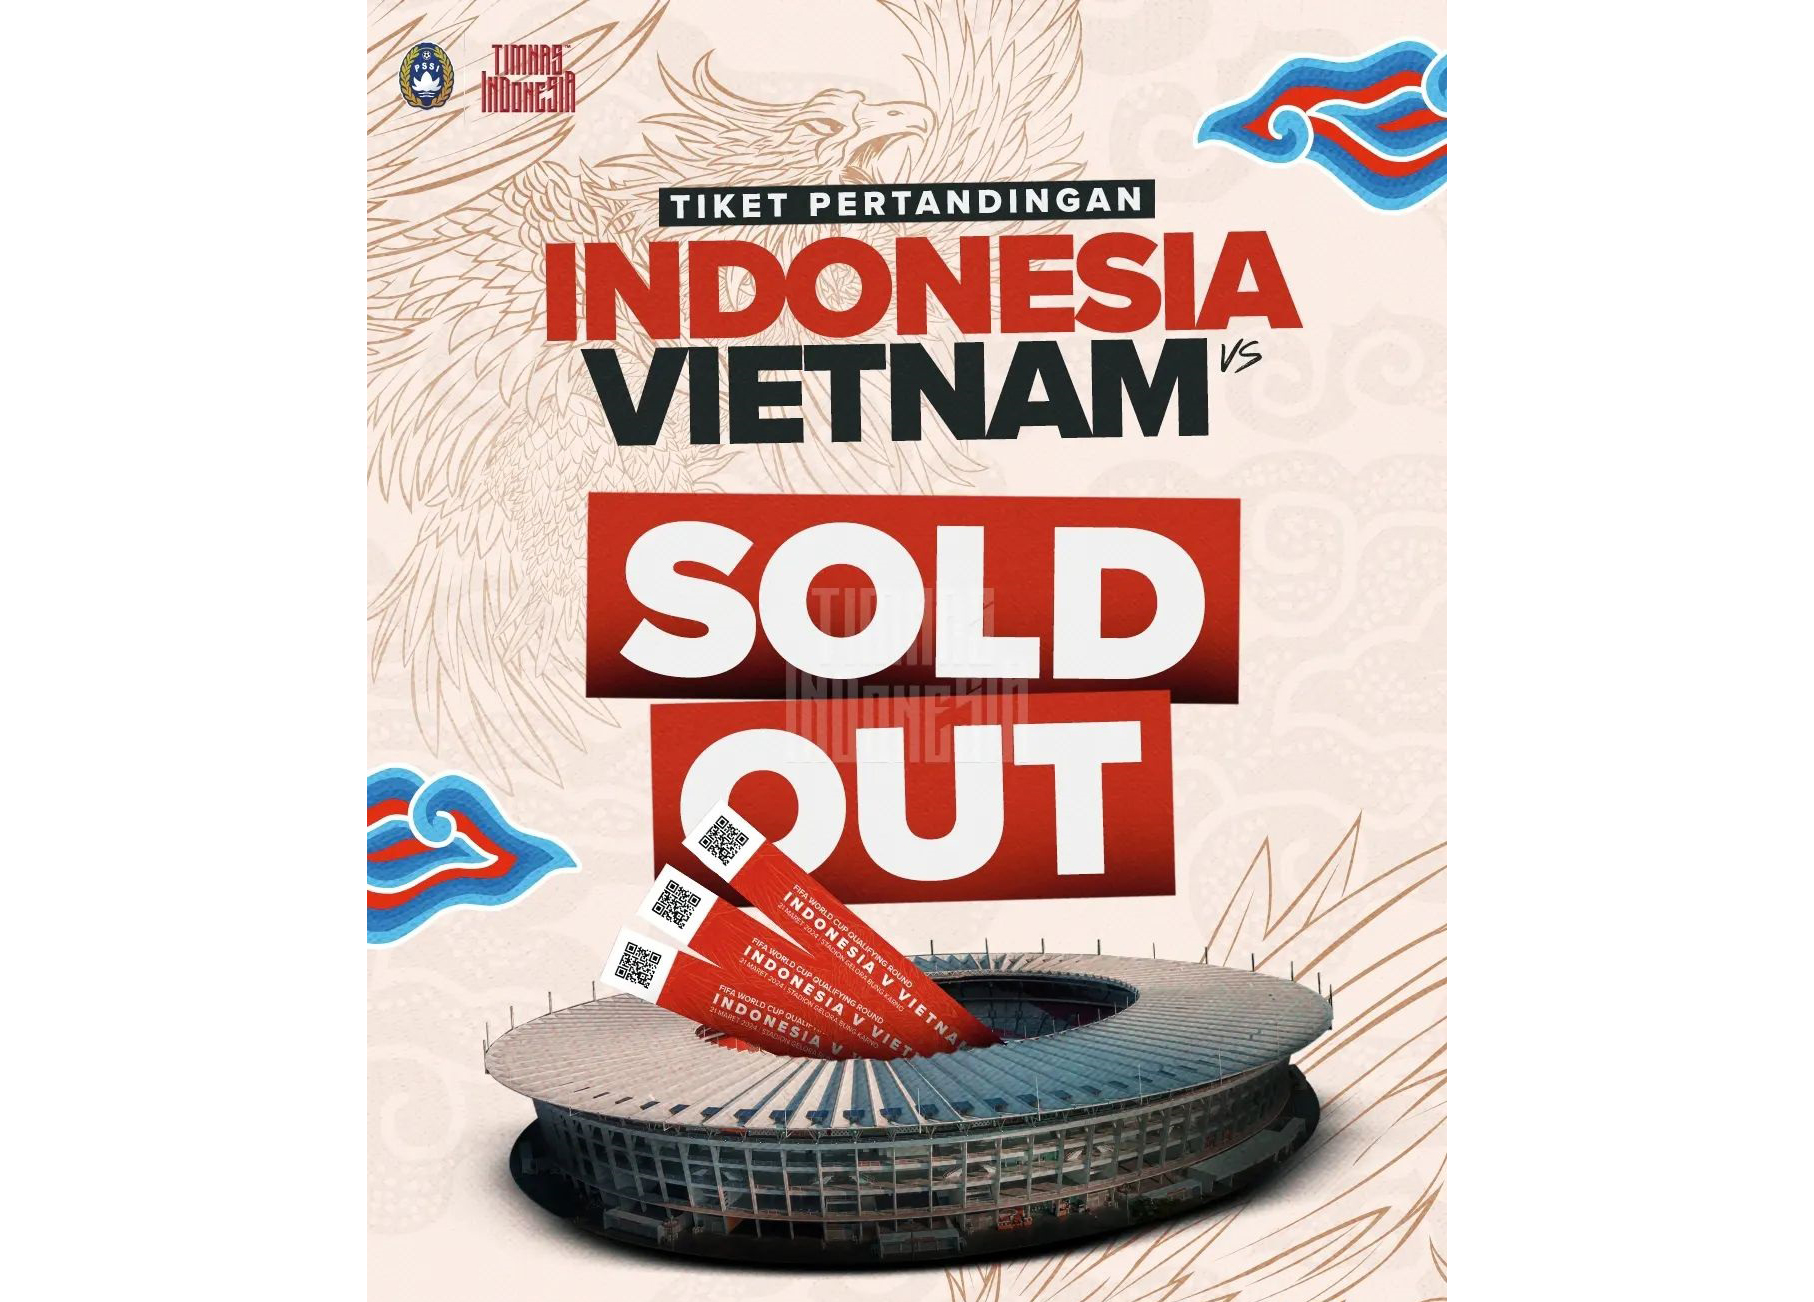 Tiket Indonesia vs Vietnam Ludes Terjual, Efek Naturalisasi?